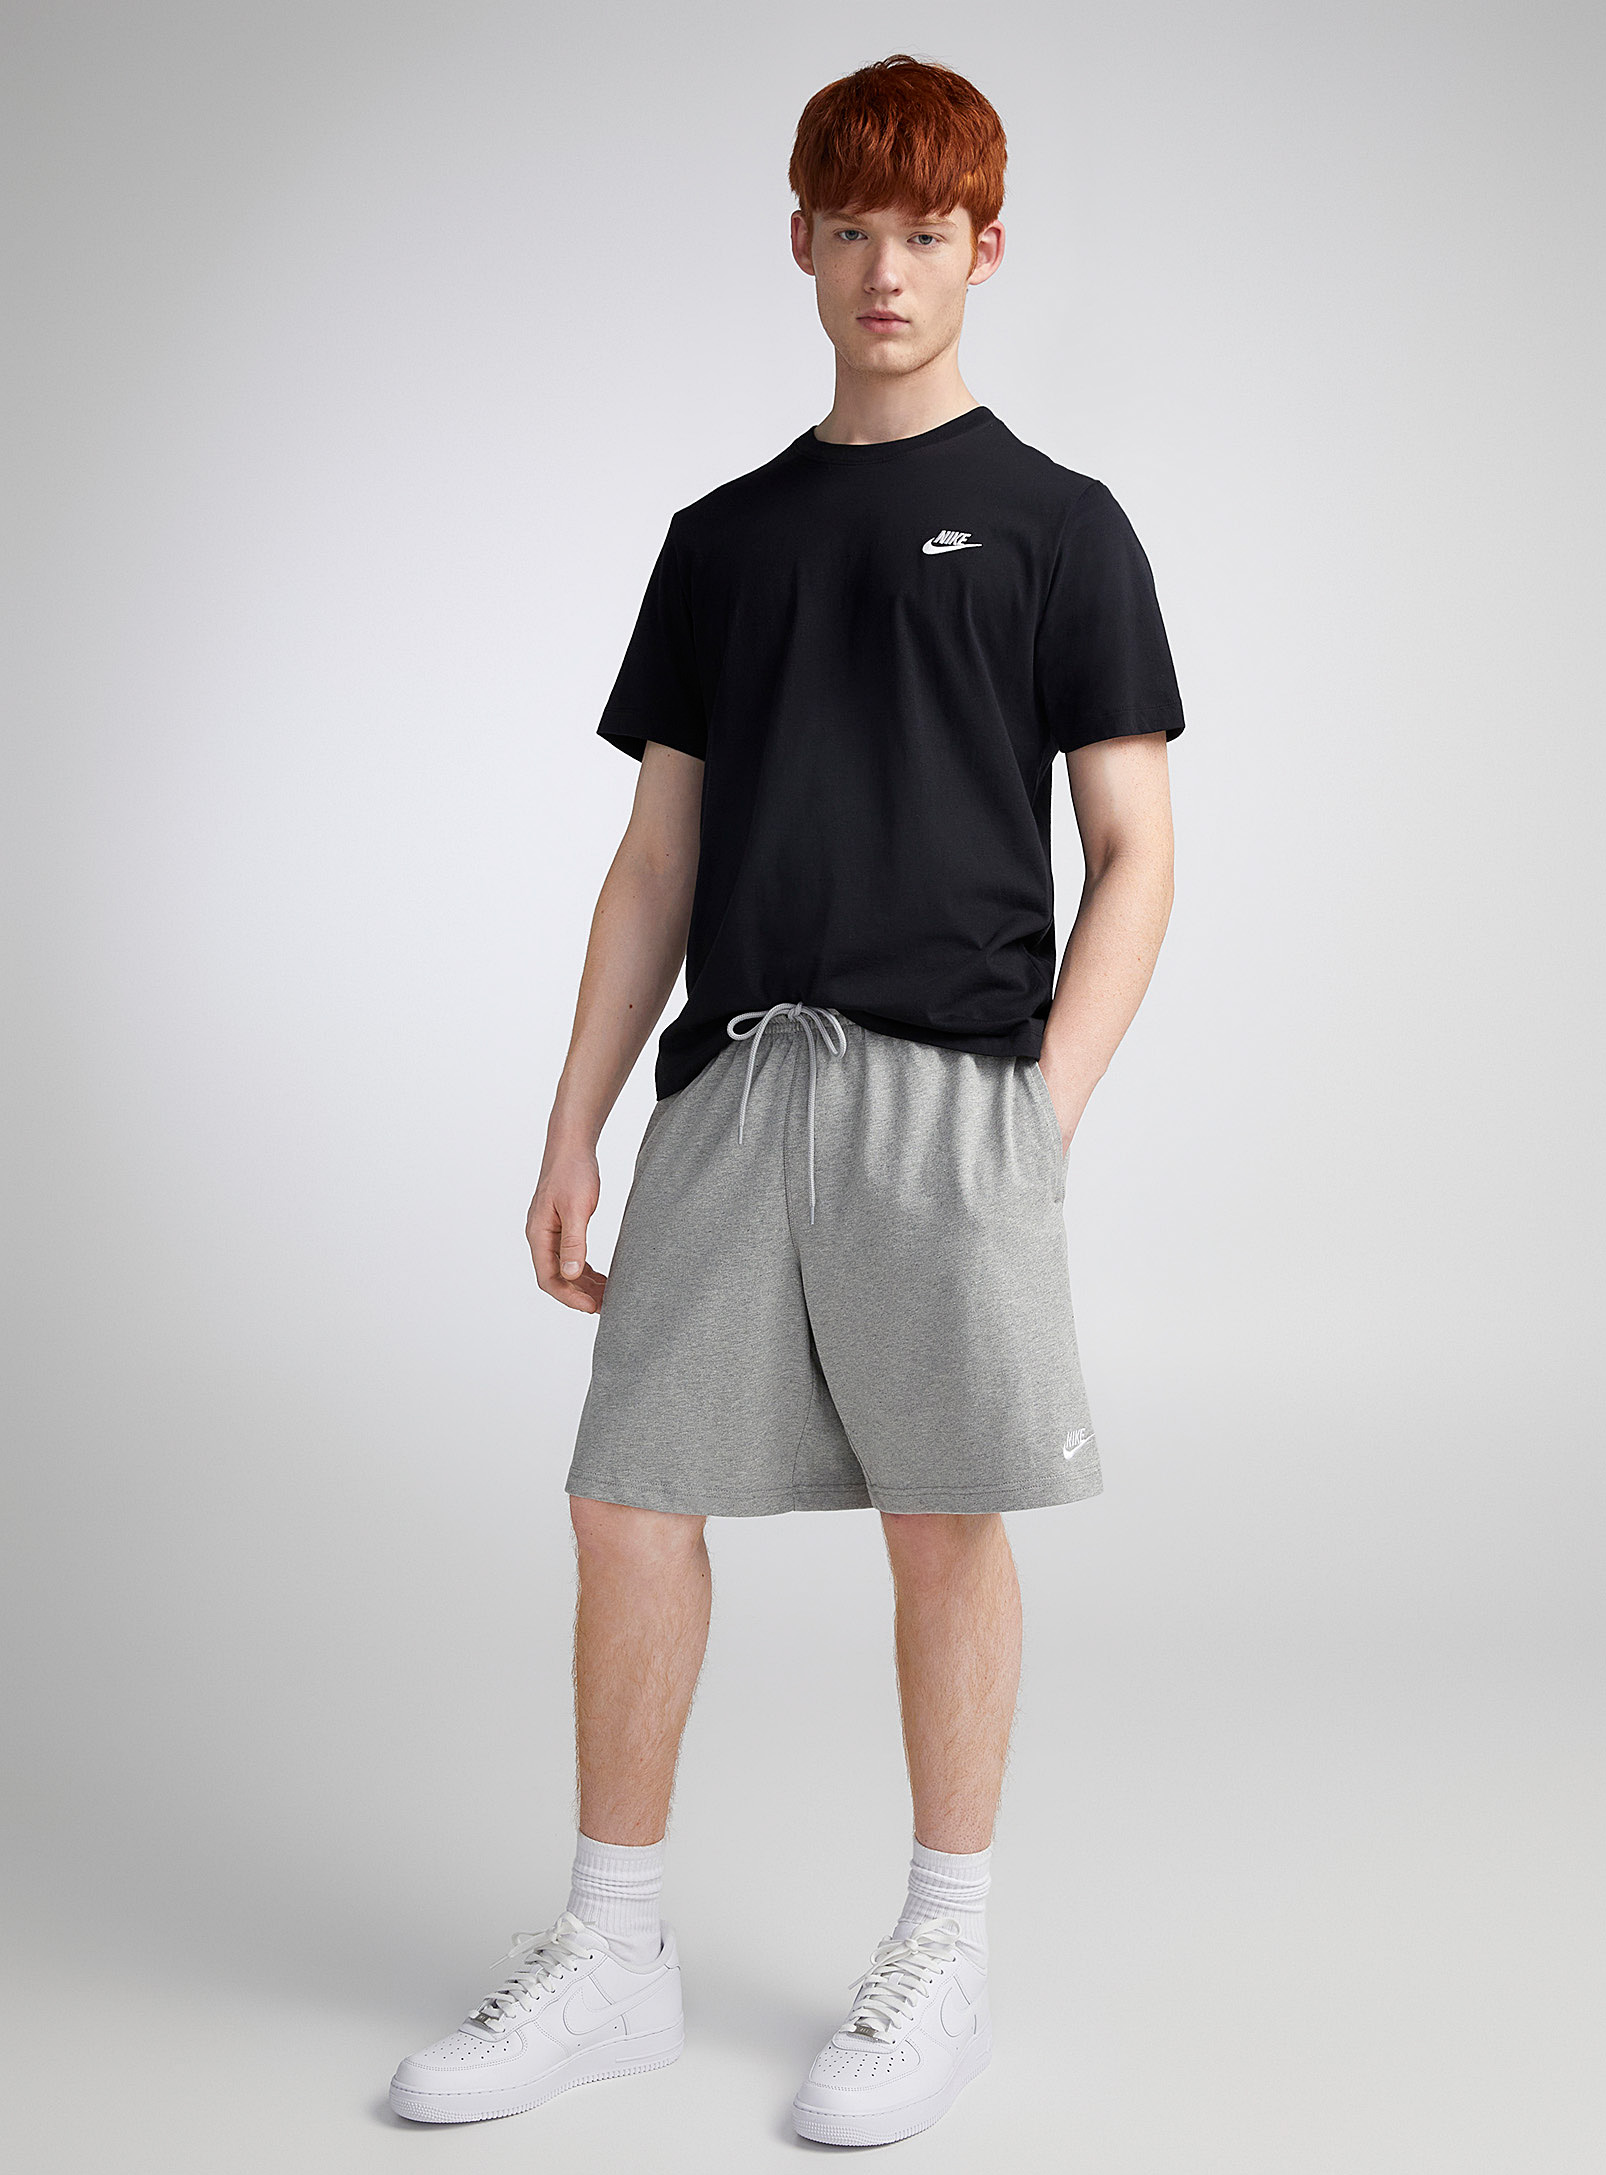 Nike - Le short tricot Club